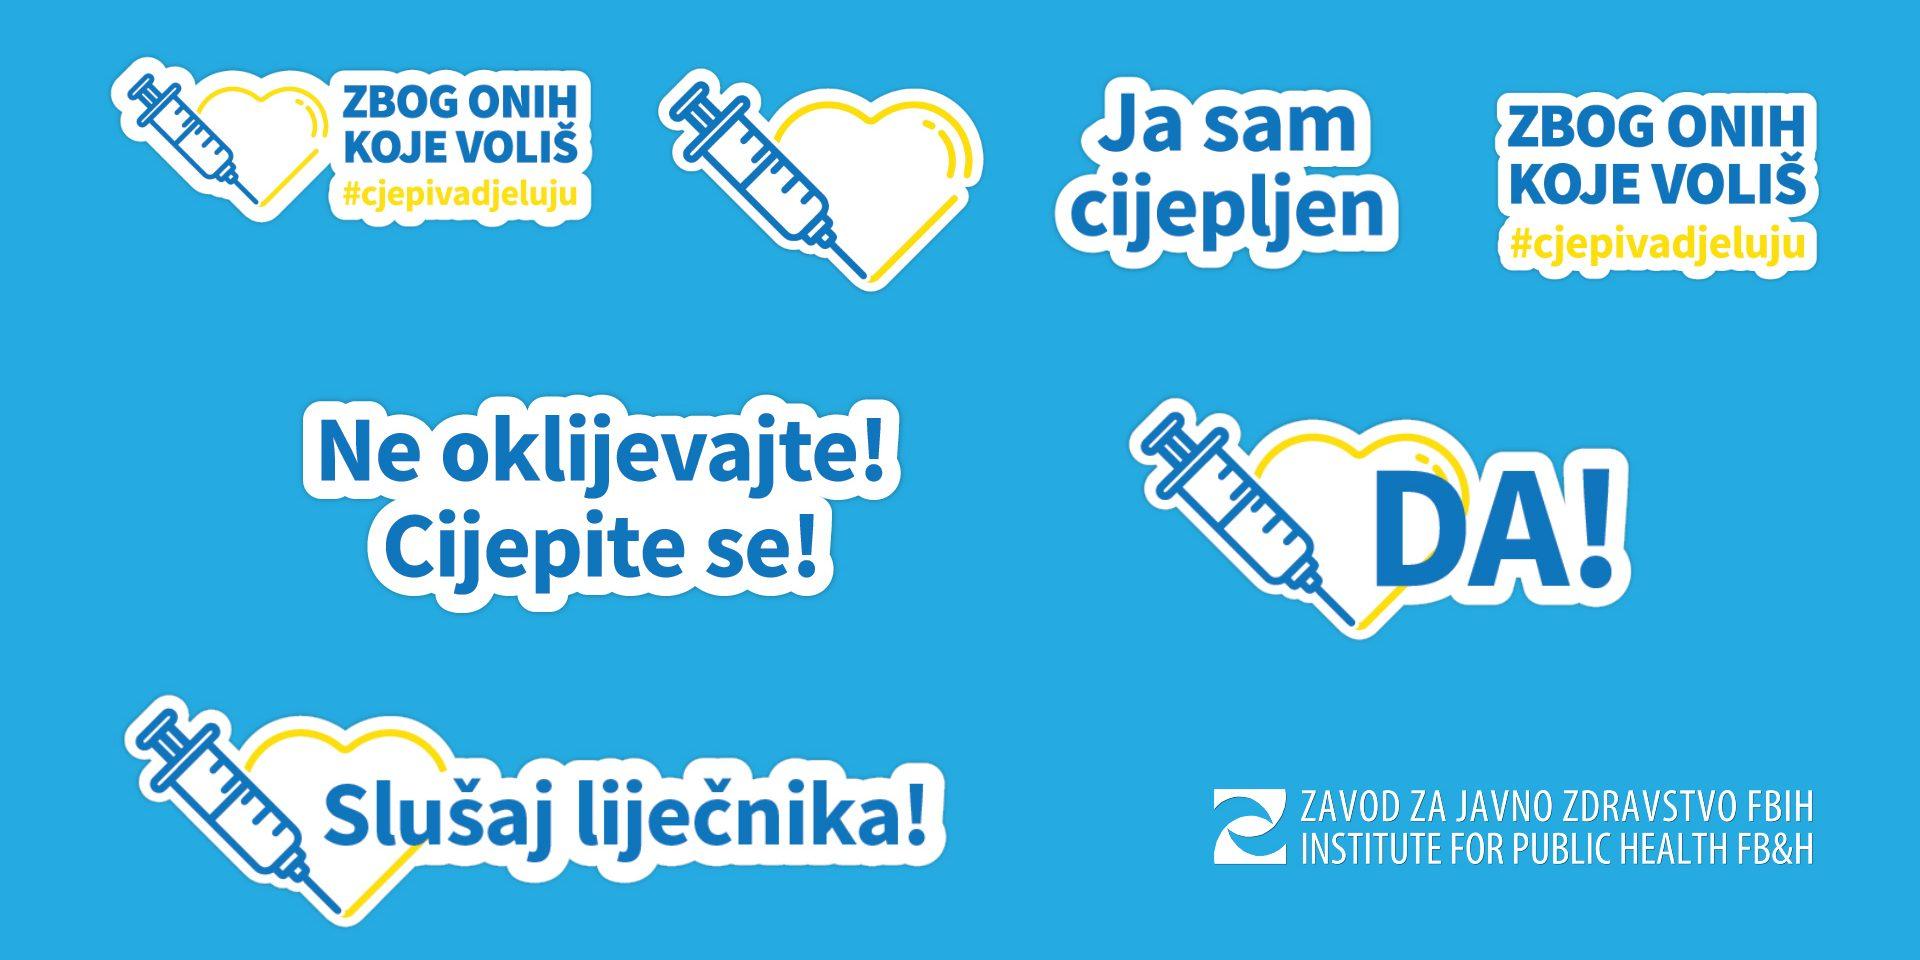 Zavod za javno zdravstvo FBiH kreirao Viber stickere u okviru kampanje “Zbog onih koje voliš#vakcinedjeluju”